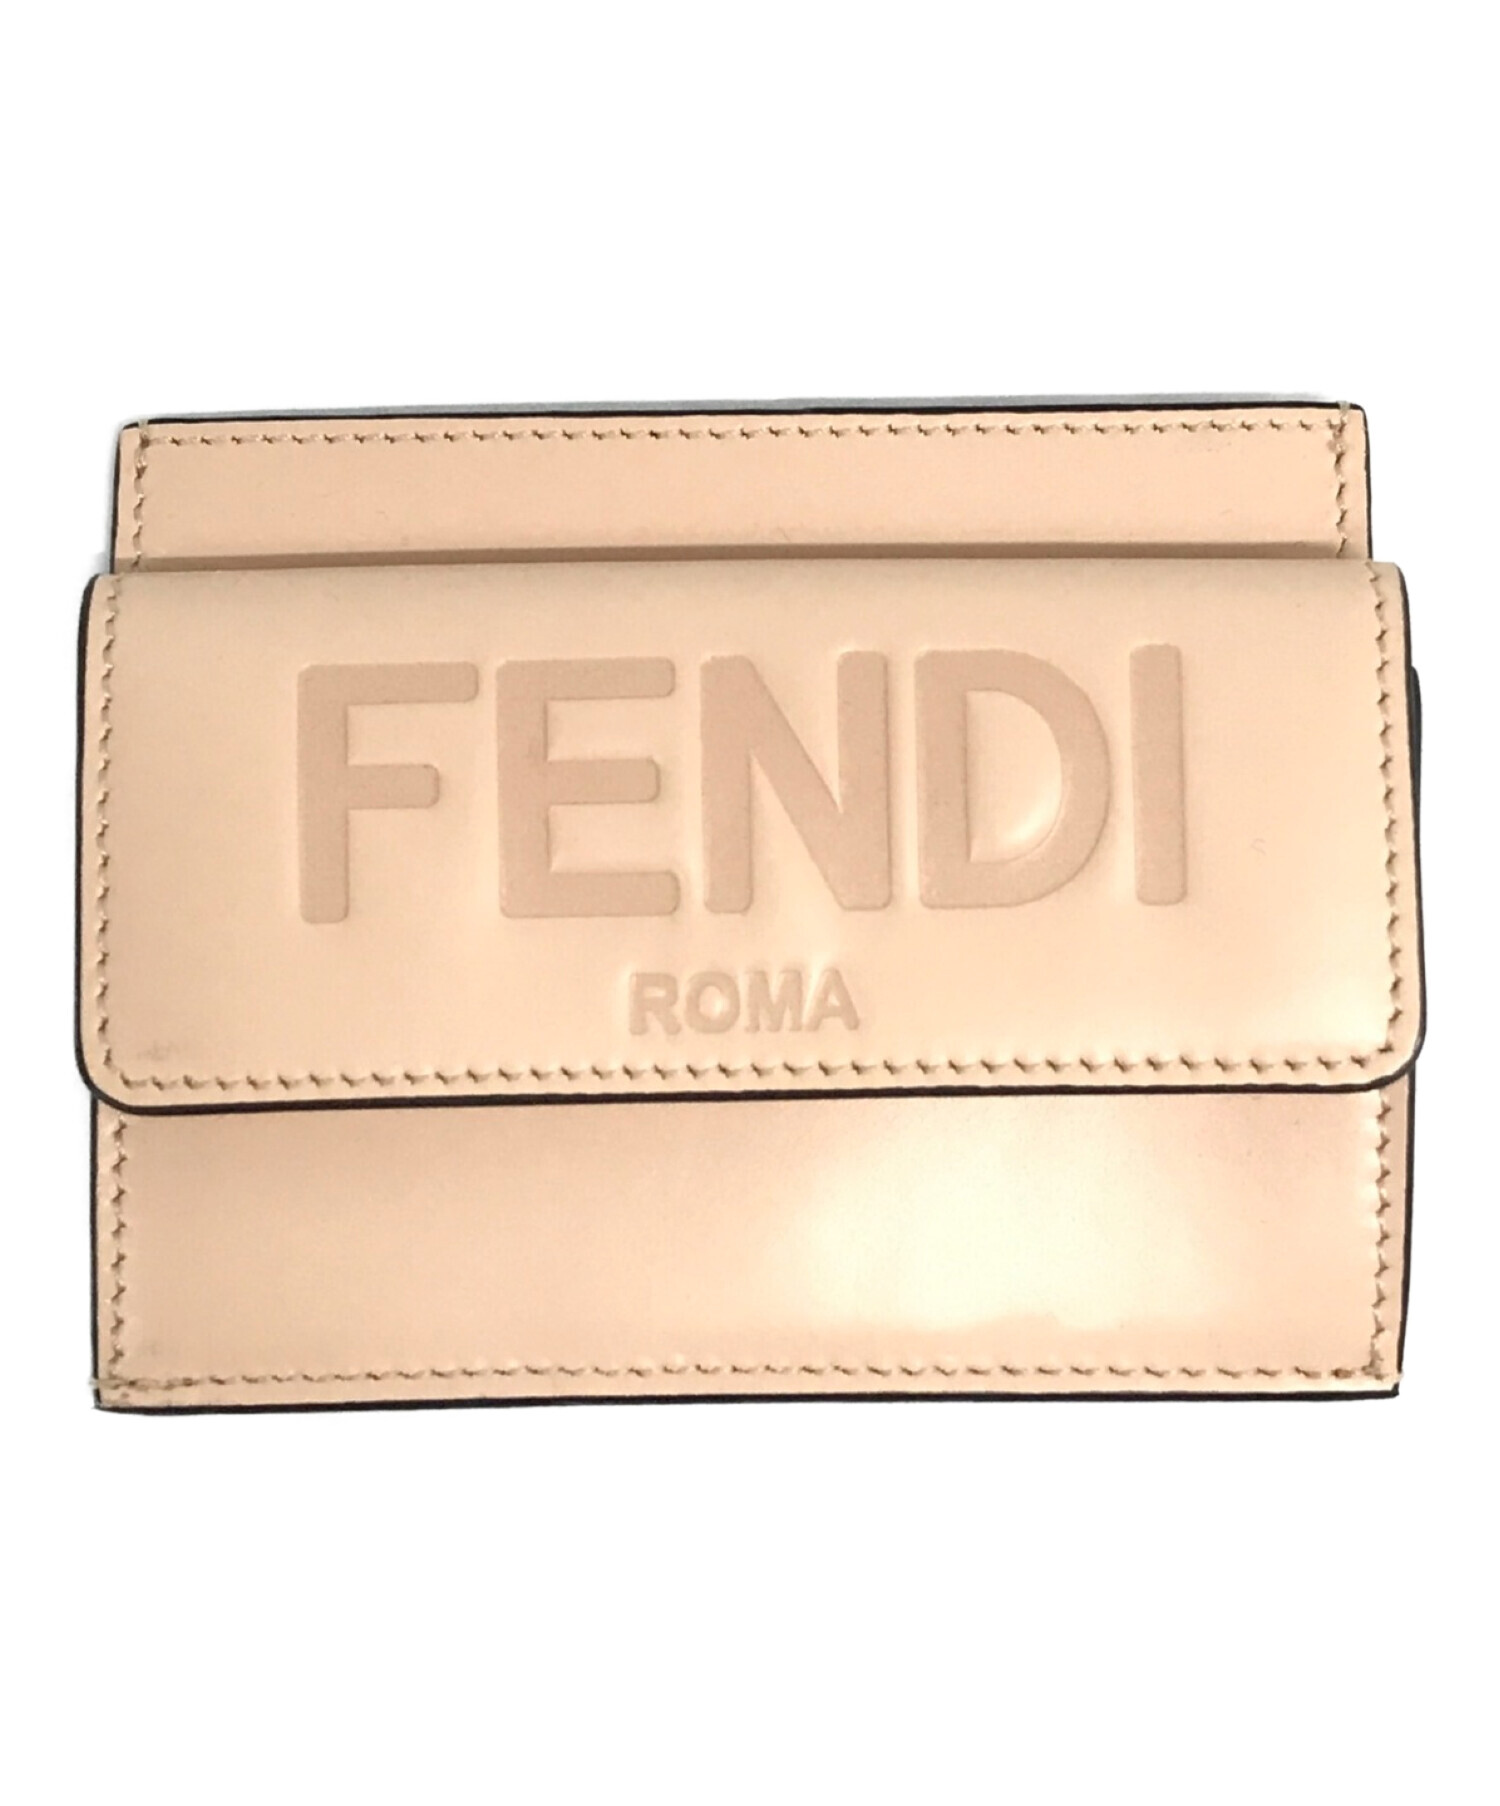 FENDI フェンディ ROMAカードケース ベージュ